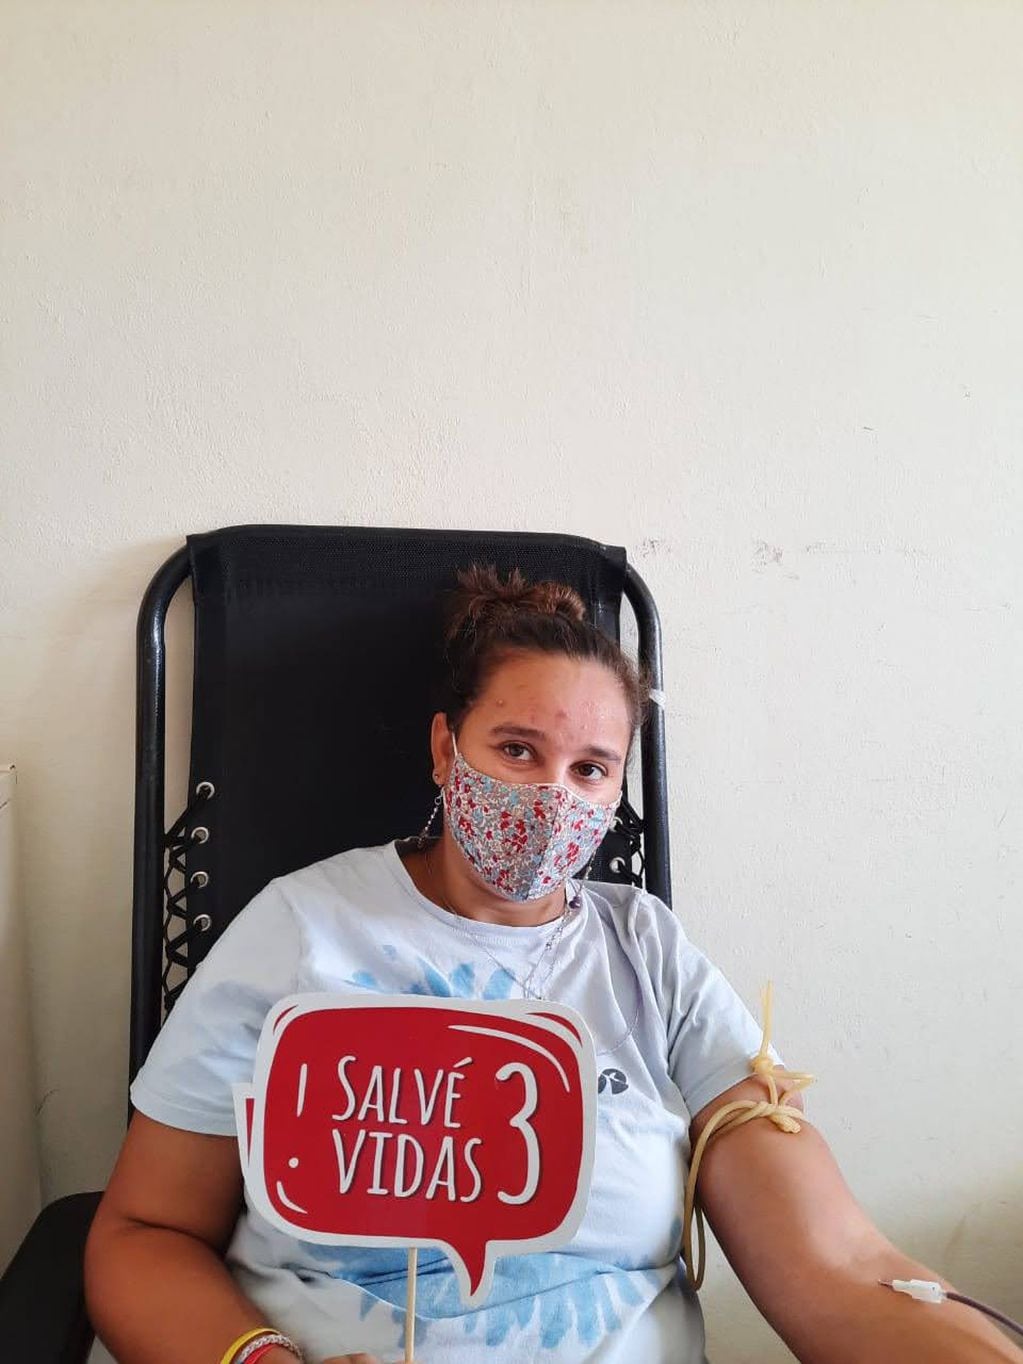 26 muestras de sangre fueron recolectadas en Orense tras la campaña de donación voluntaria organizada por el Servicio de hemoterapia del Centro Municipal de Salud